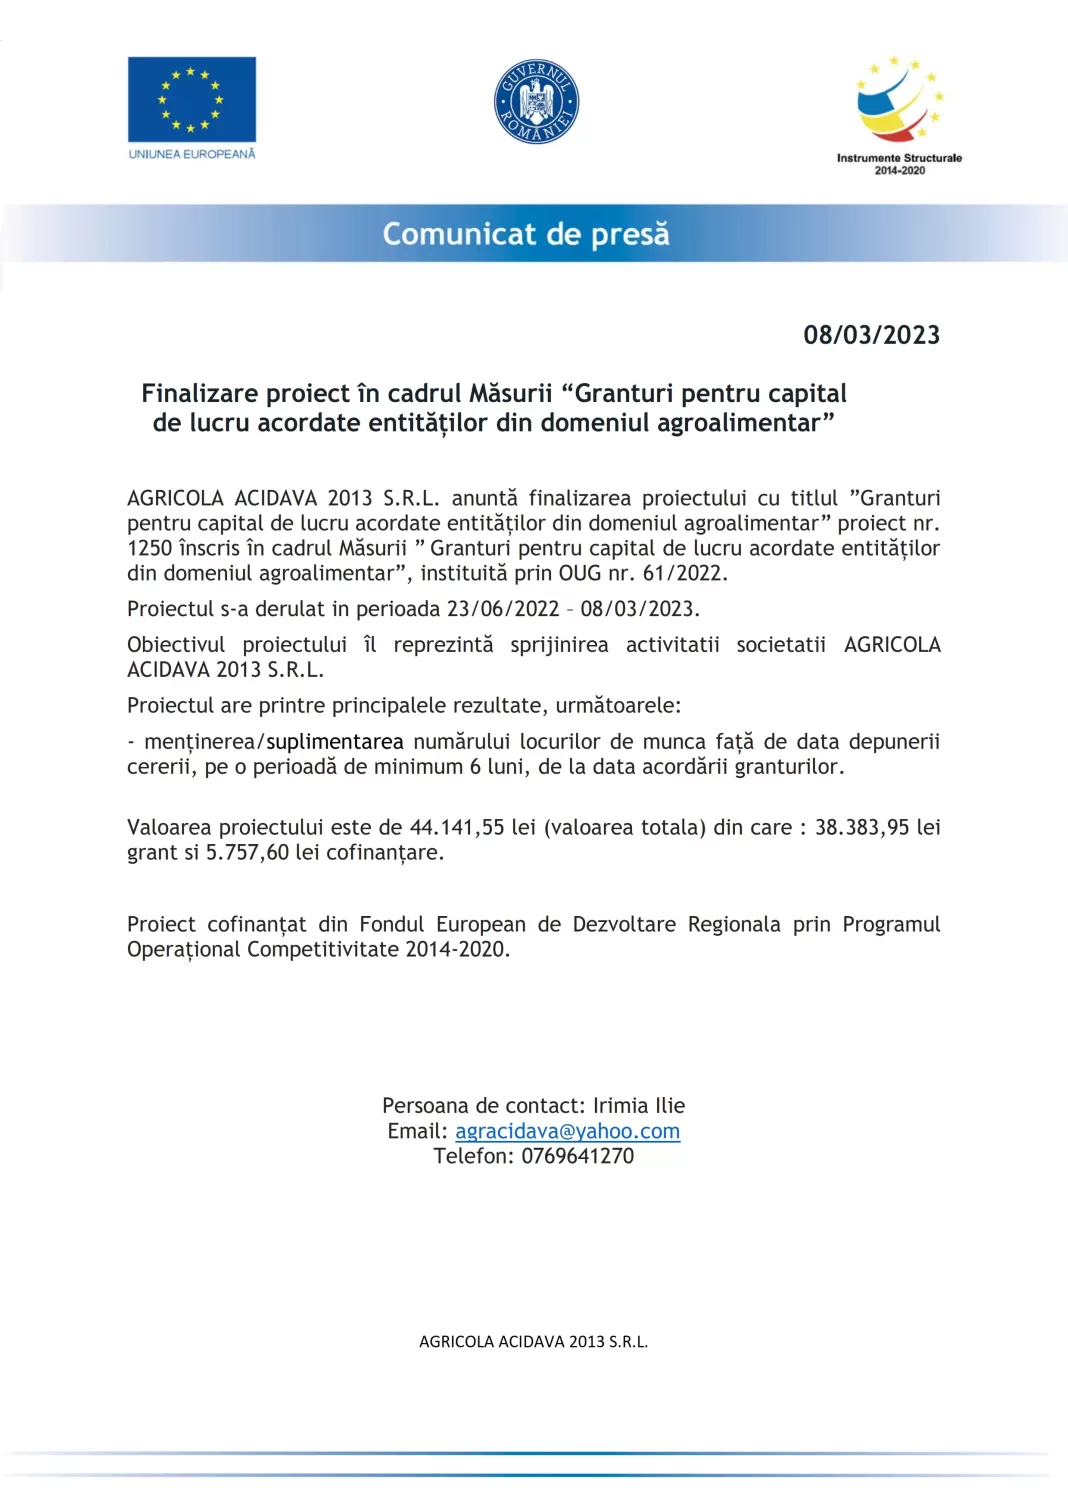 Comunicat finalizare proiect AGRICOLA ACIDAVA 2013 S.R.L. - 1250